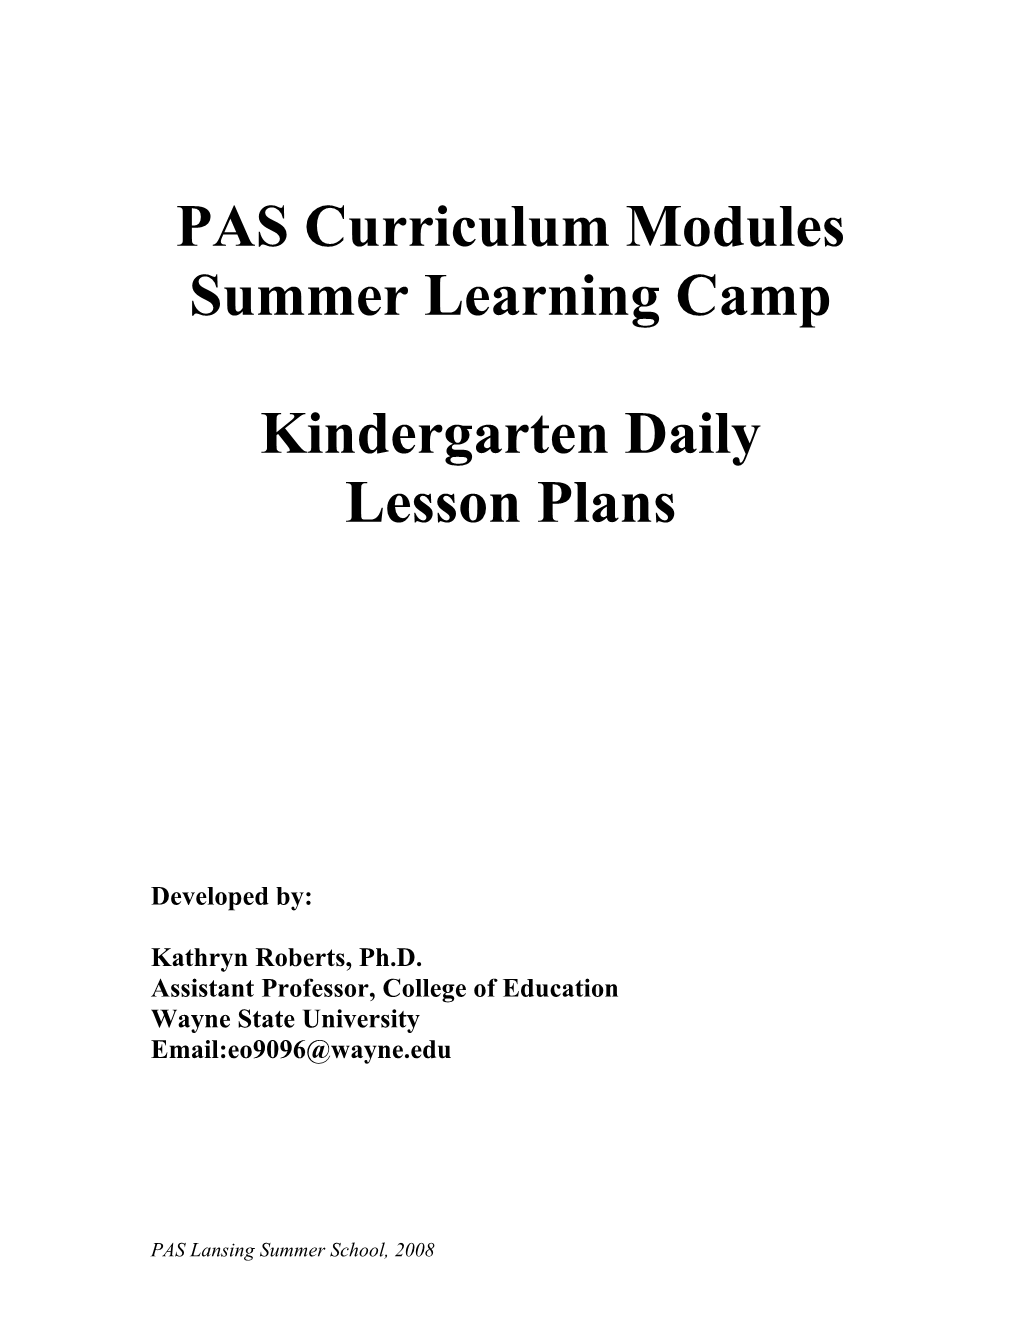 PAS Curriculum Modules s1